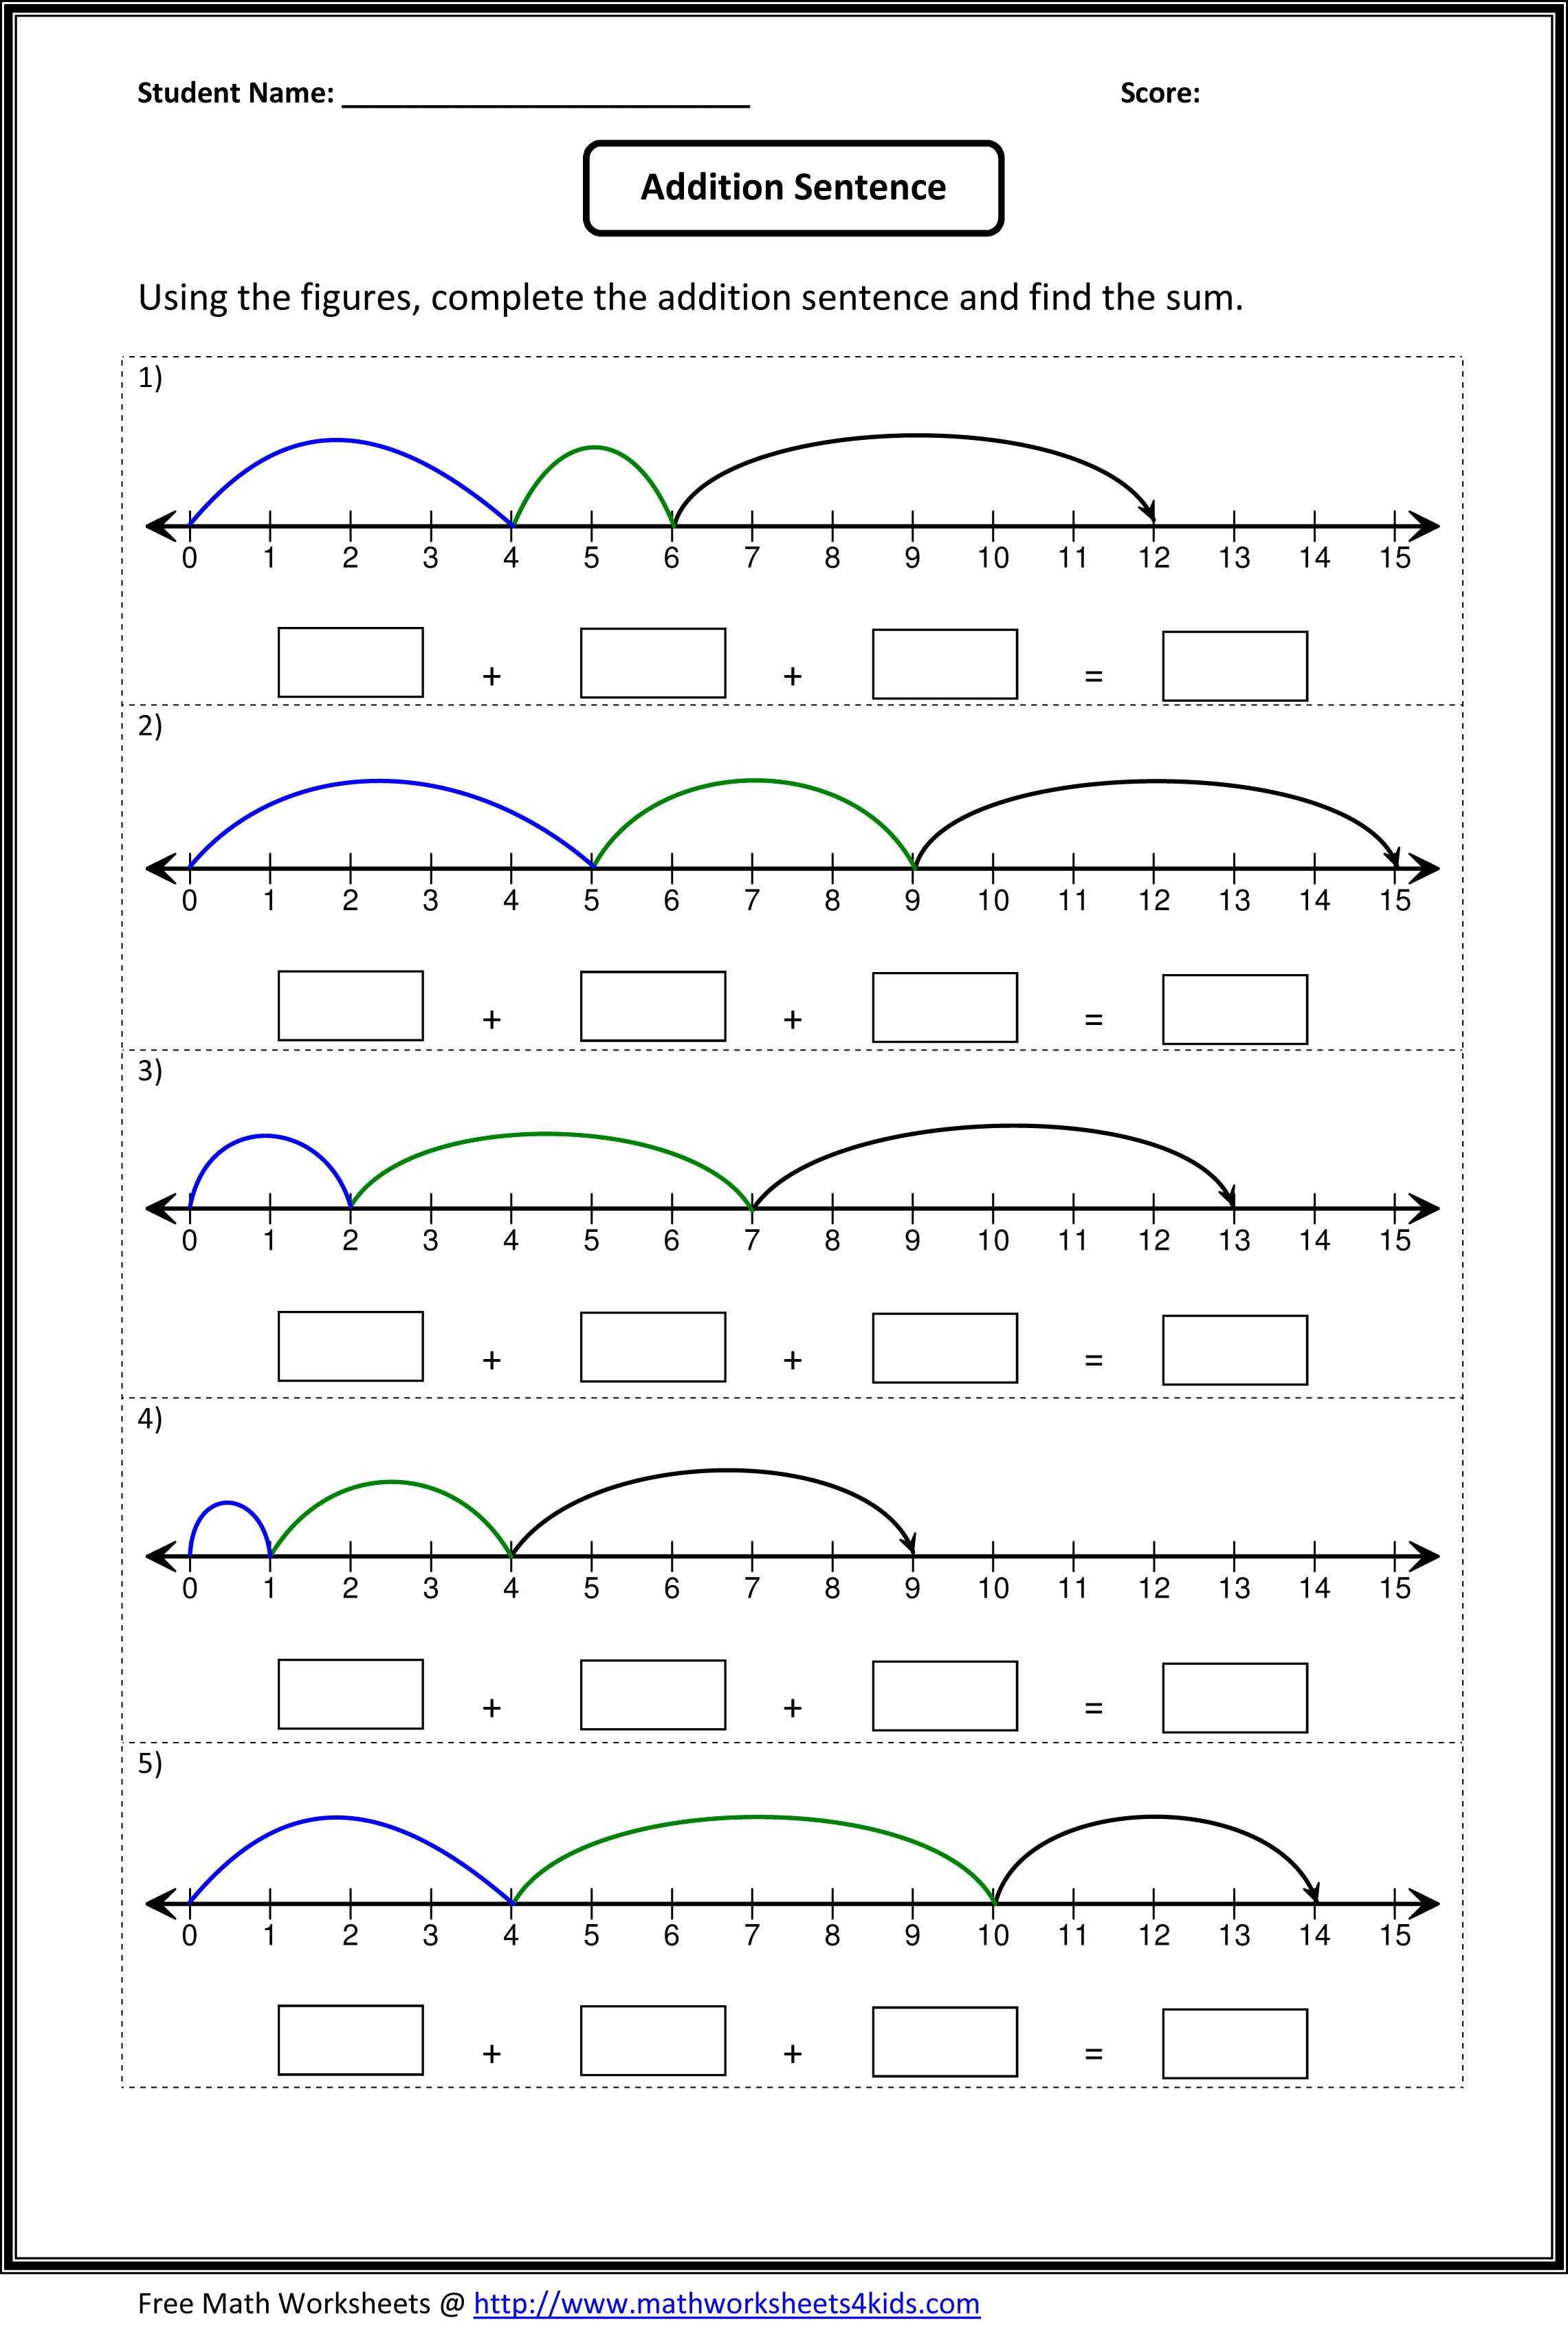 Kindergarten Number Line Worksheets Number Line Worksheets Printable Number Line Templates